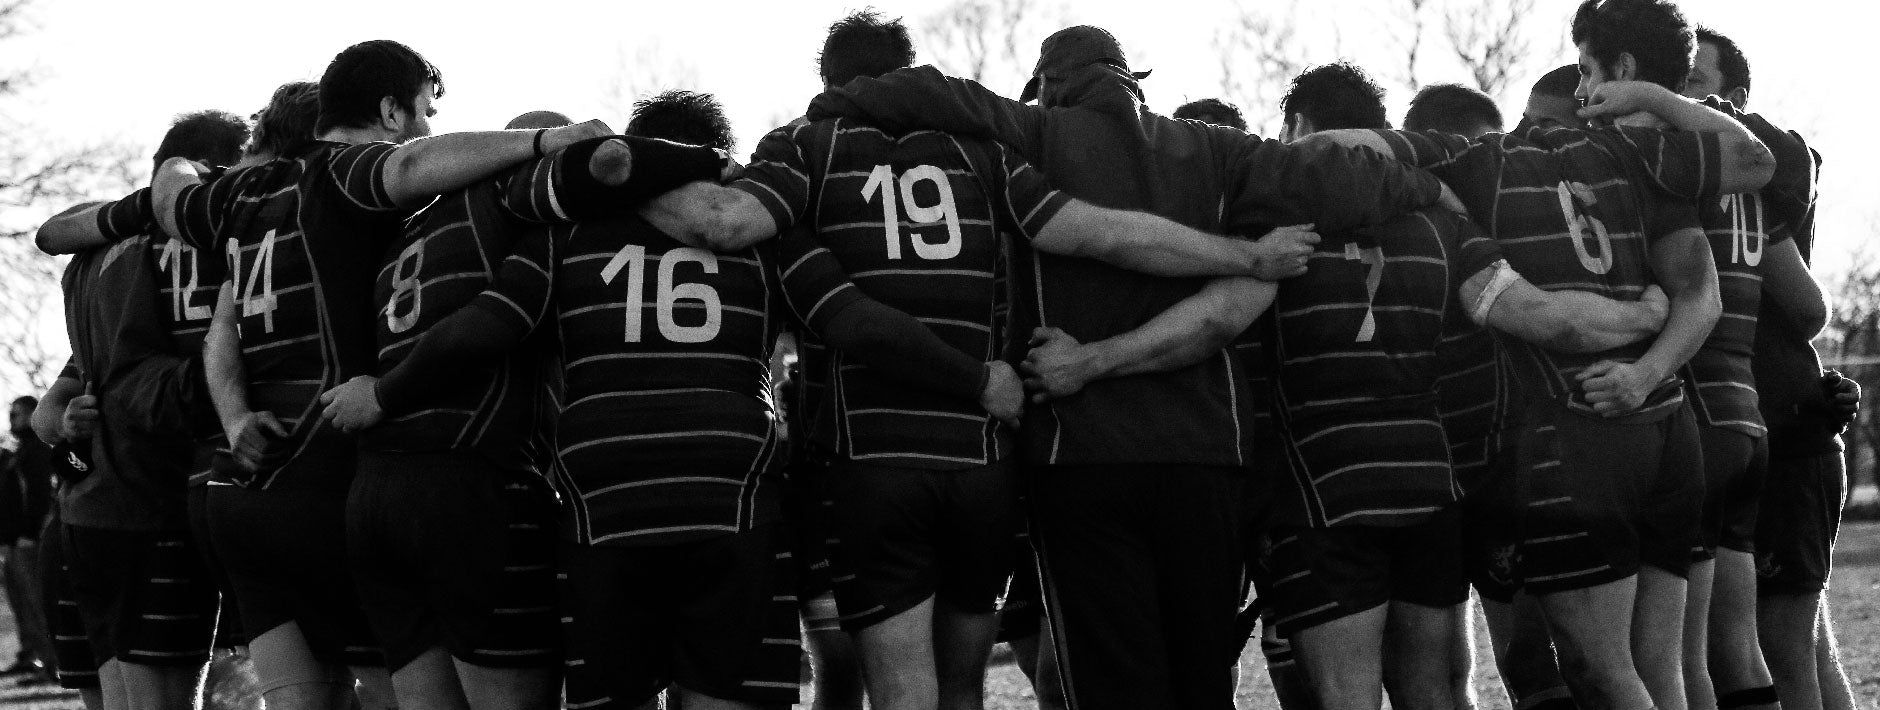 La passion et l'esprit Rugby sont au coeur de notre ligne de vêtement Blacks Legend